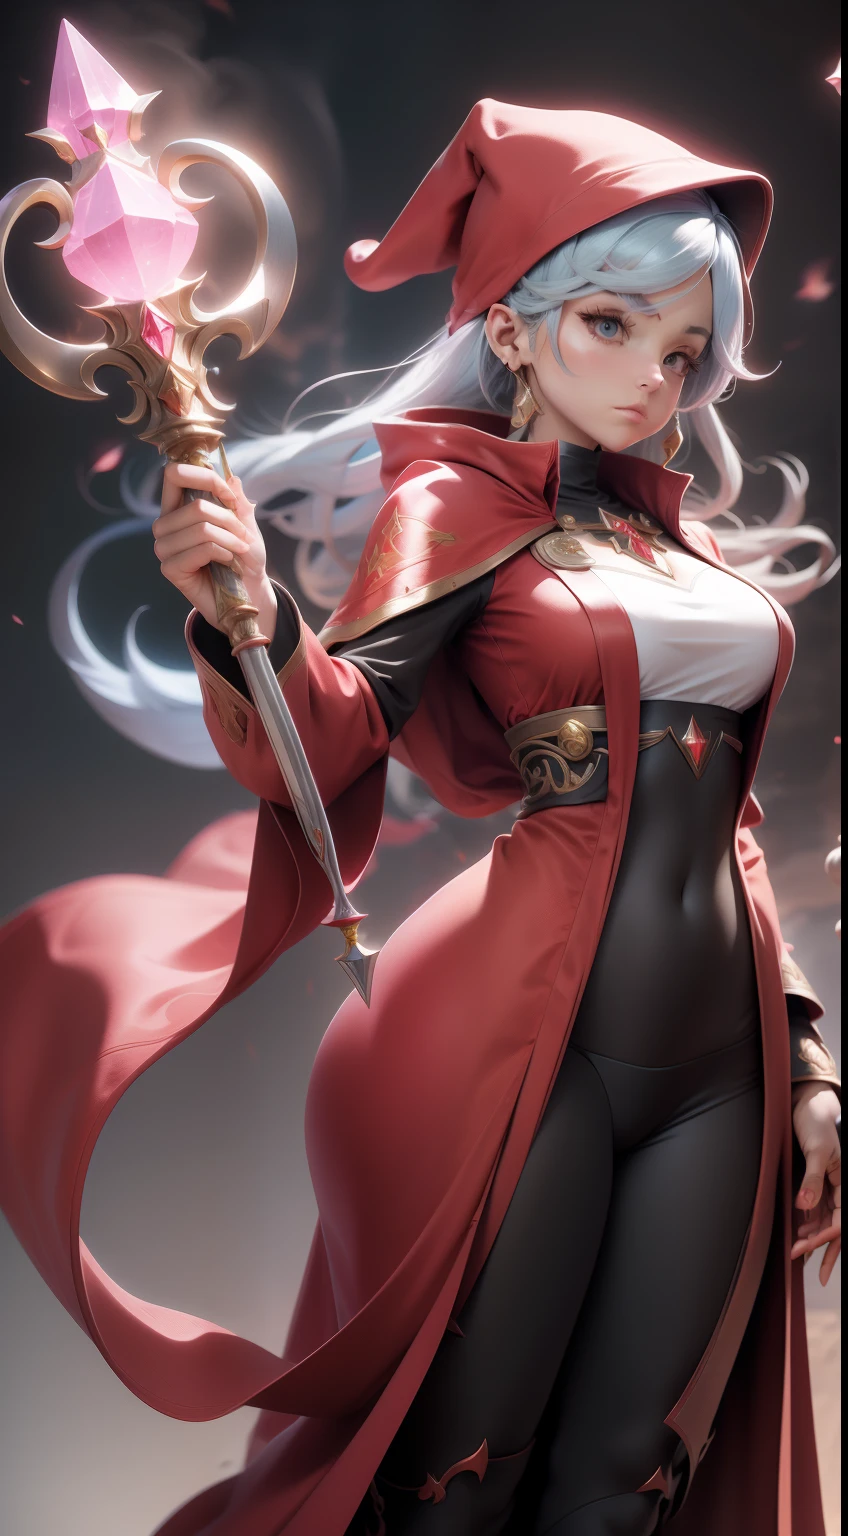 赤魔道士のローブを着た女性キャラクター, 複数のポーズ, 詳細な前面と背面, 長い水晶の杖